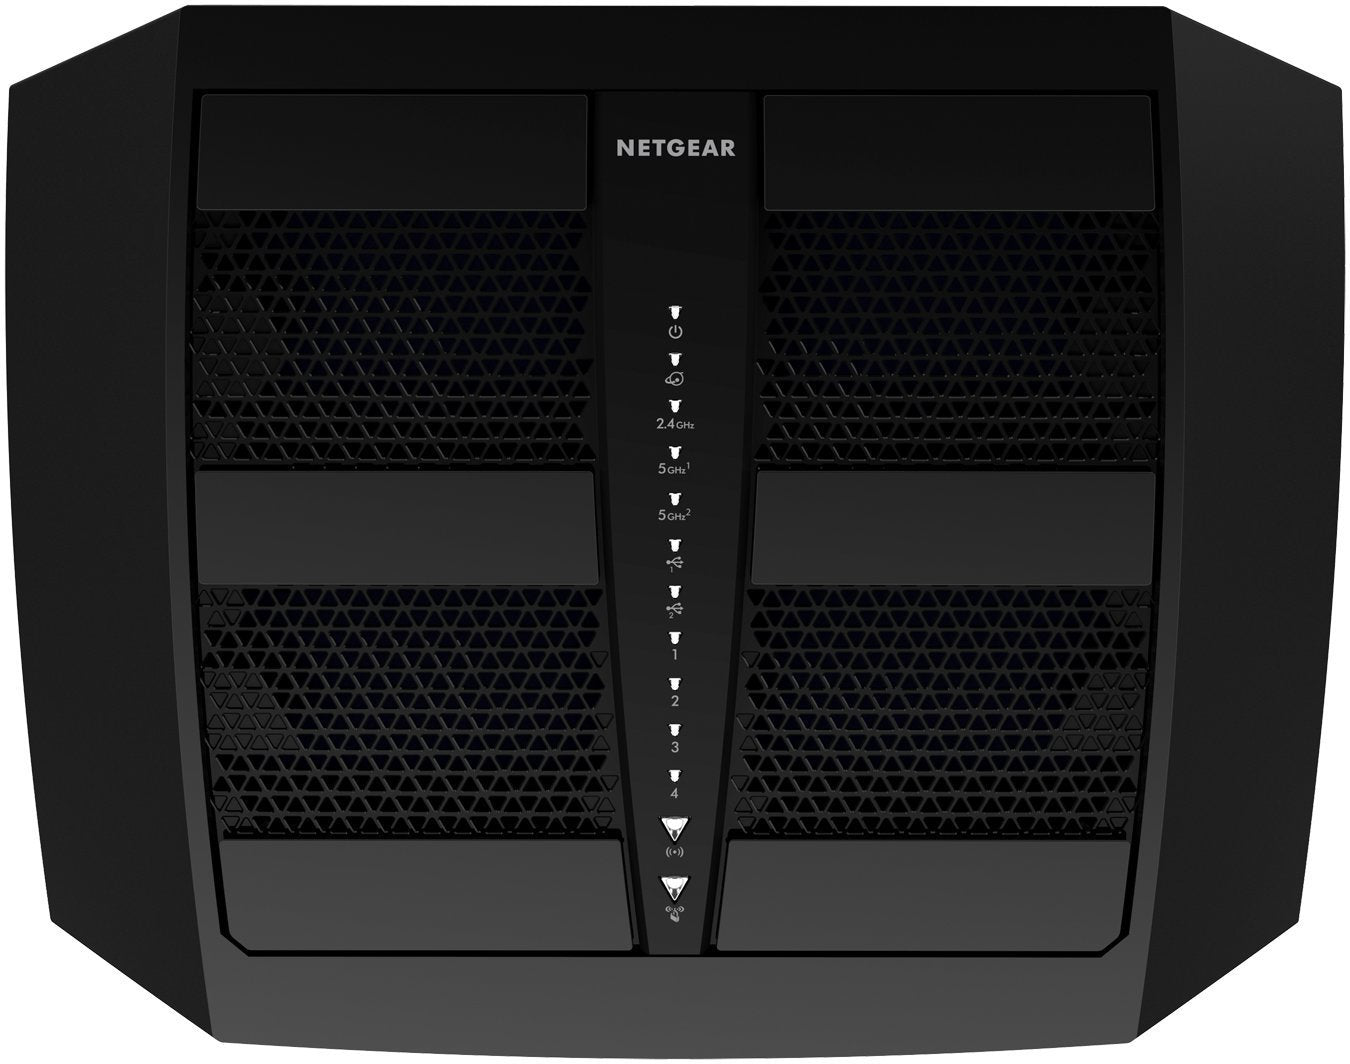 NETGEAR  Nighthawk X6 AC3200 Tri-Band Gigabit WiFi Router